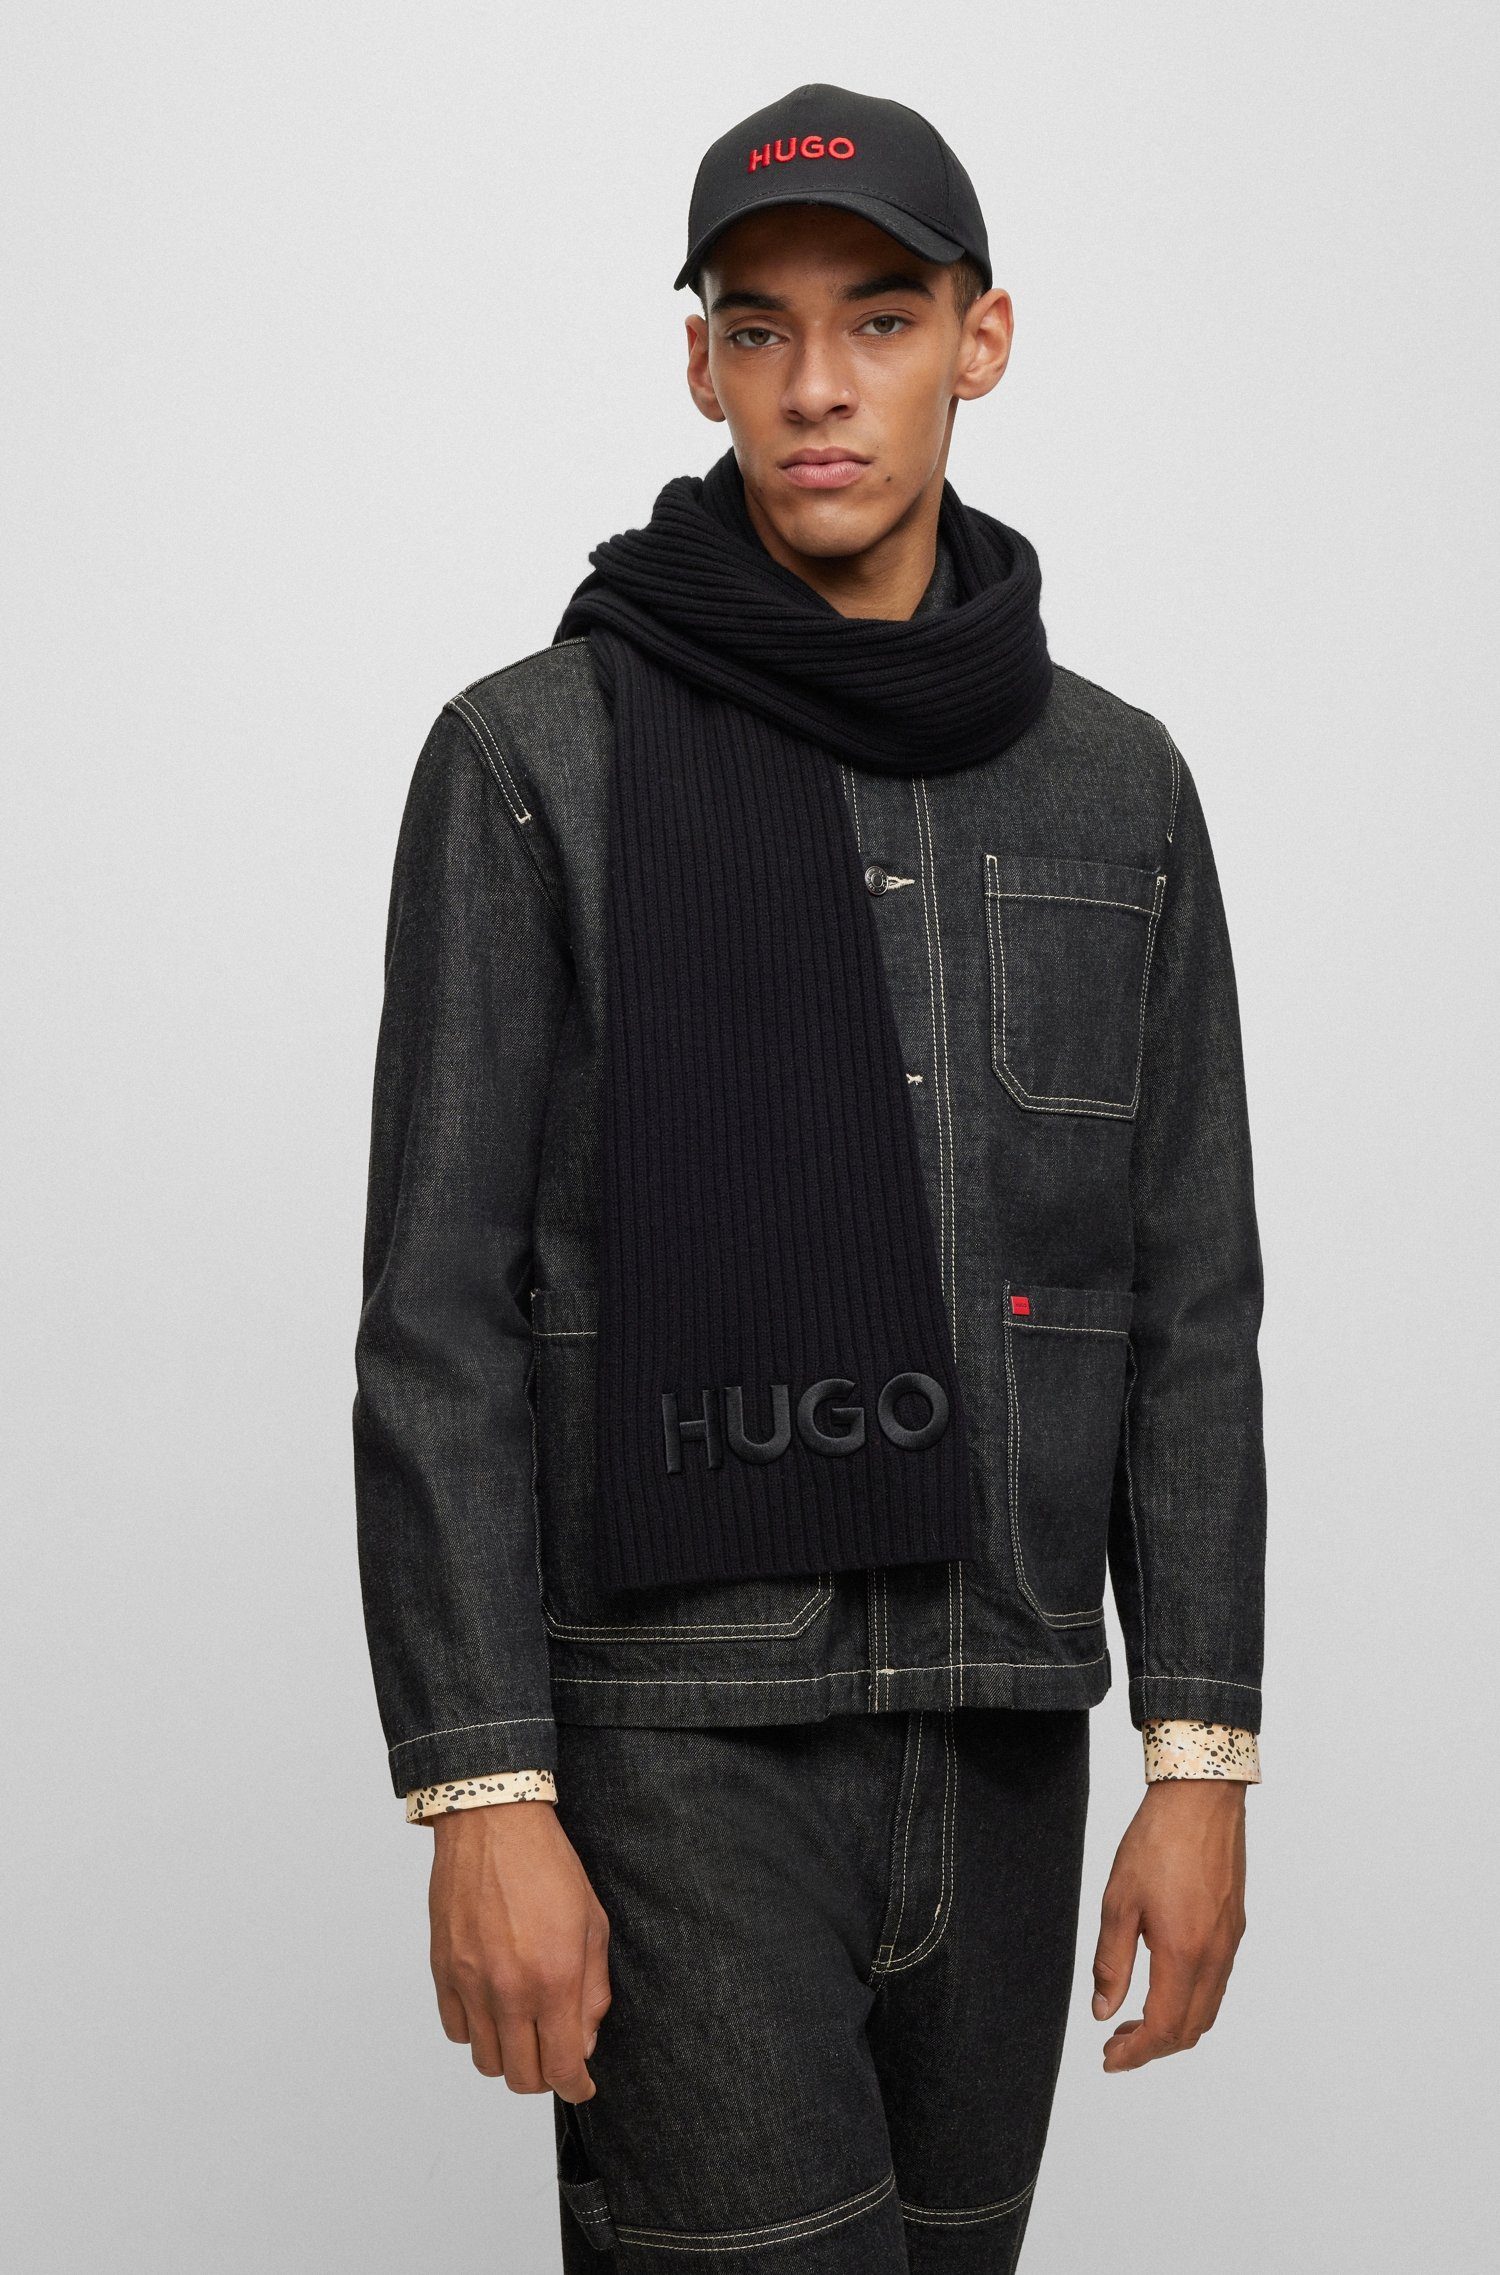 HUGO-Logoschriftzug Black Zunio-1, HUGO mit Schal